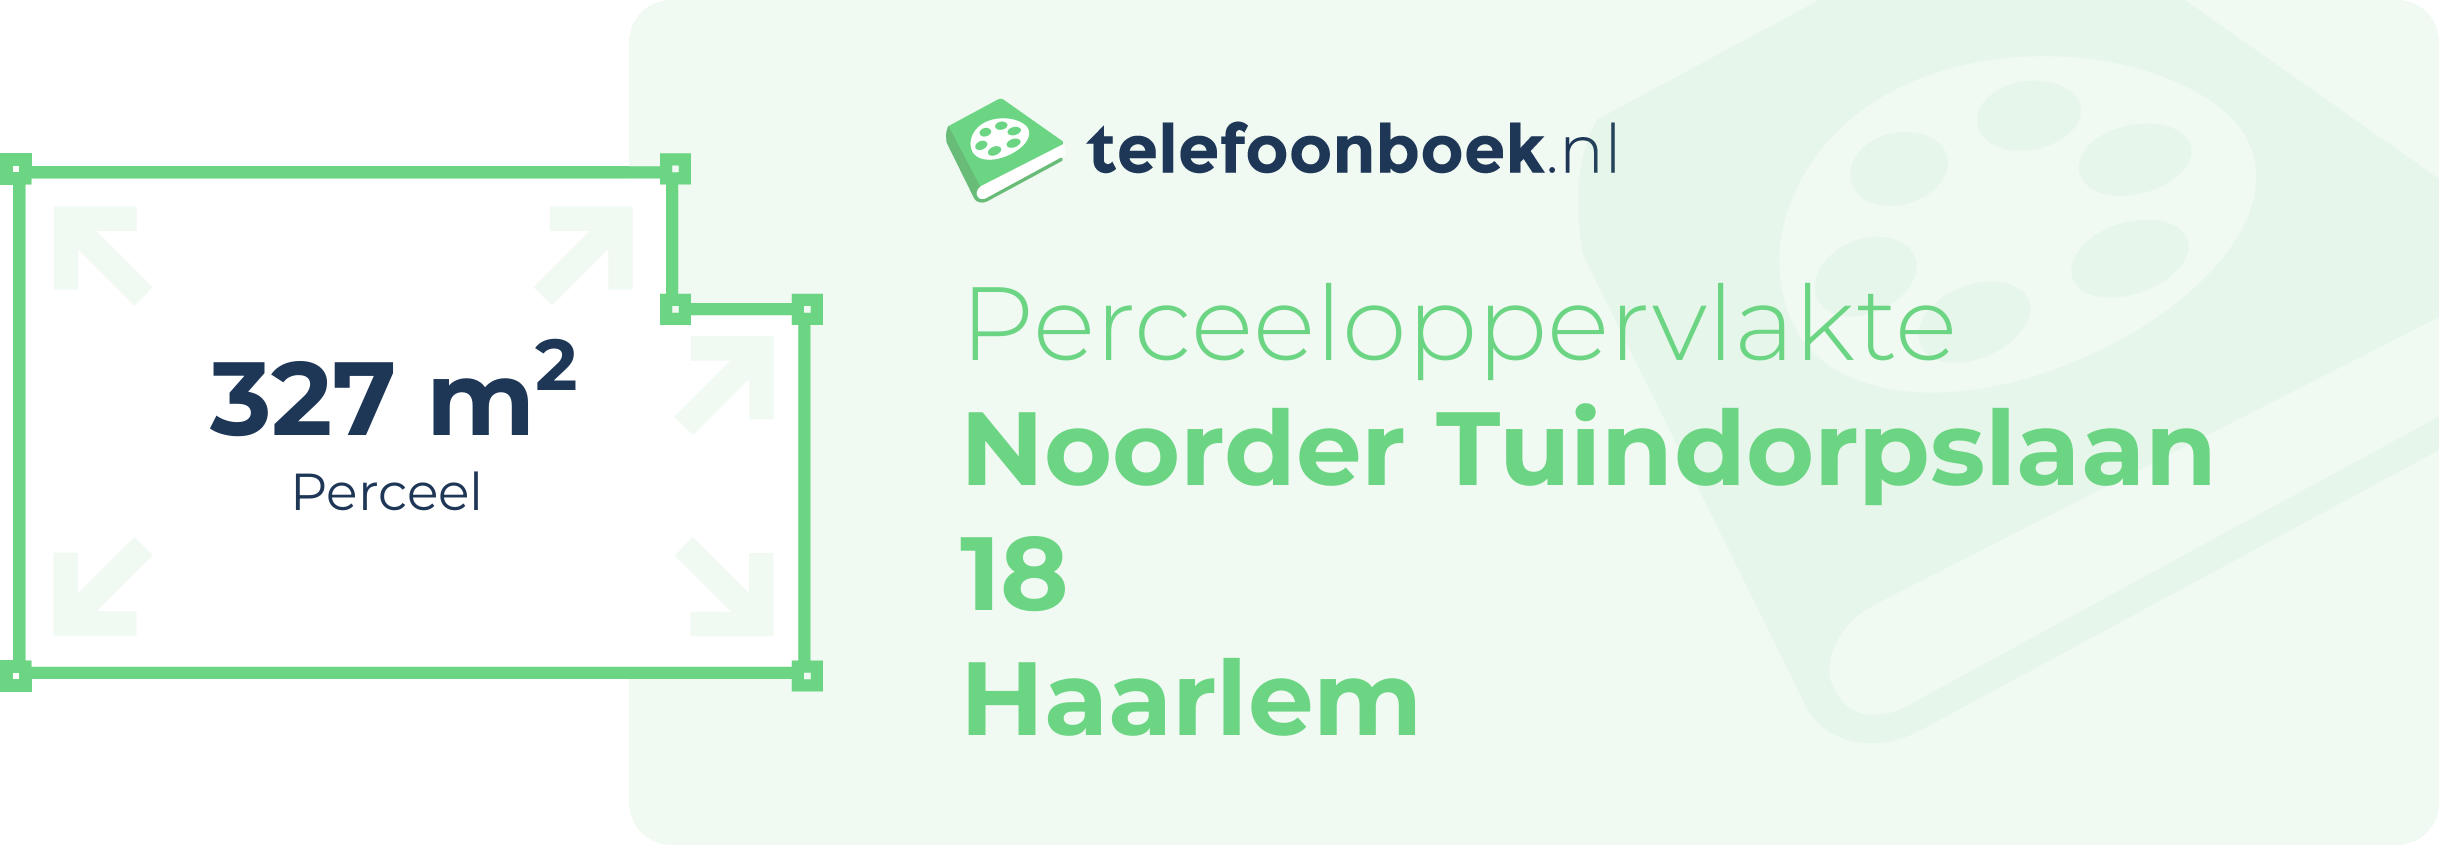 Perceeloppervlakte Noorder Tuindorpslaan 18 Haarlem